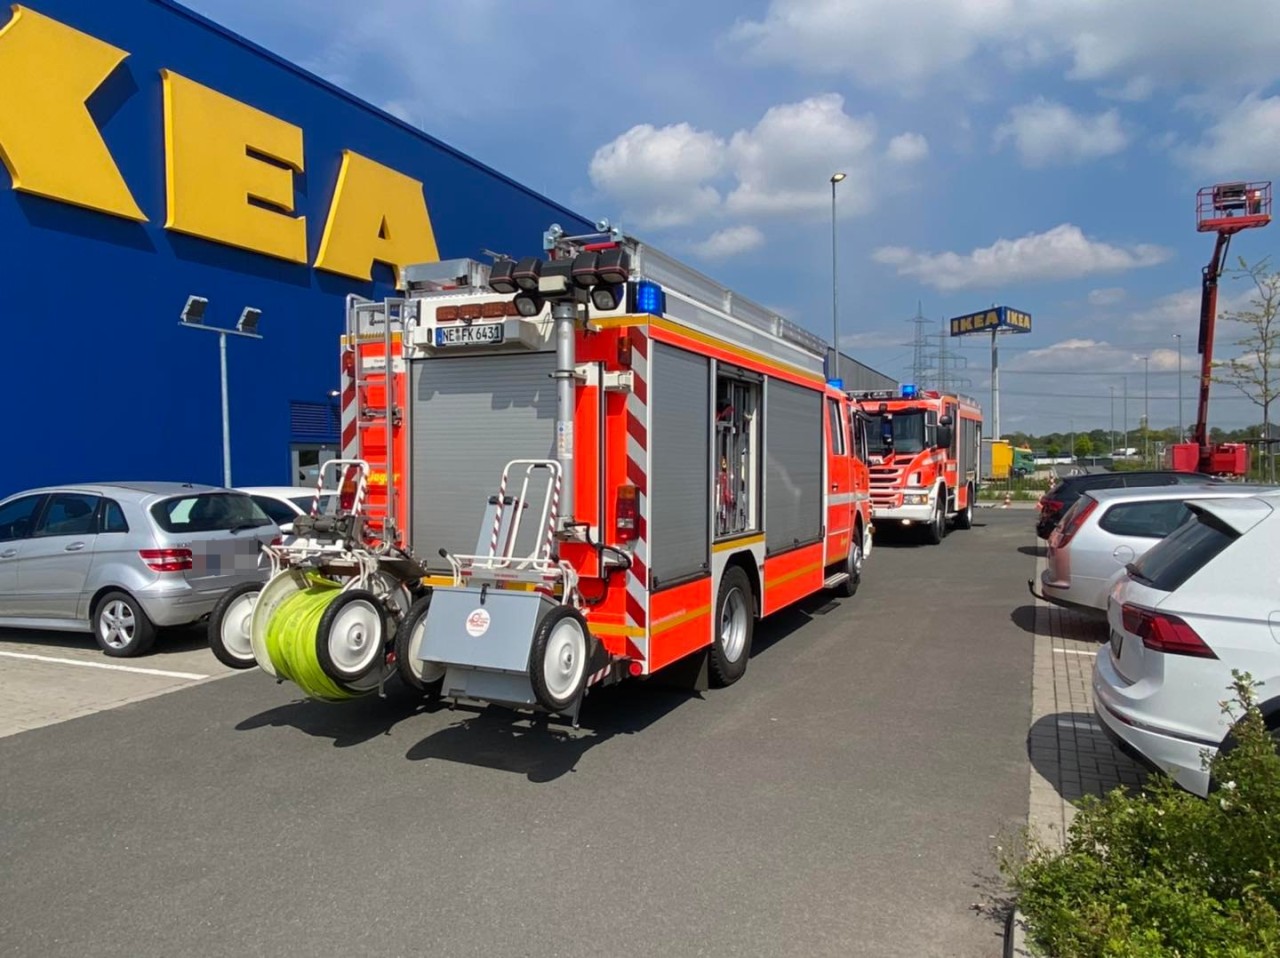 Das Ikea-Möbelhaus in Kaarst musste am Samstag evakuiert werden.